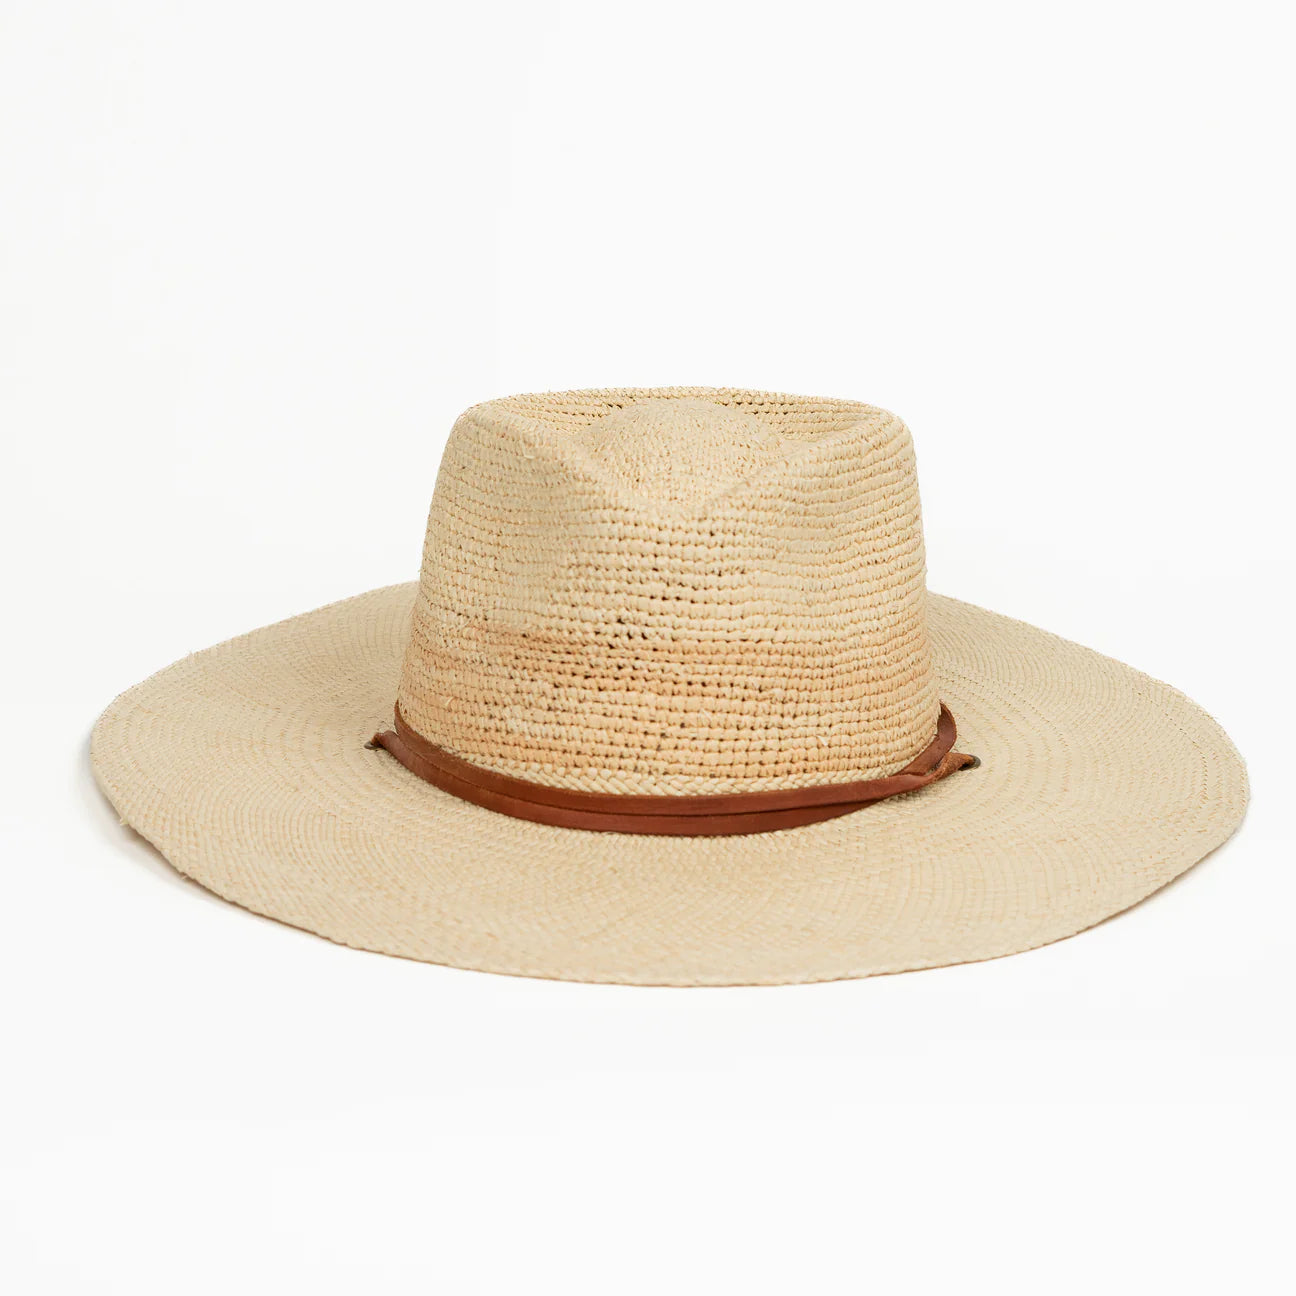 La Ranchera Straw Hat